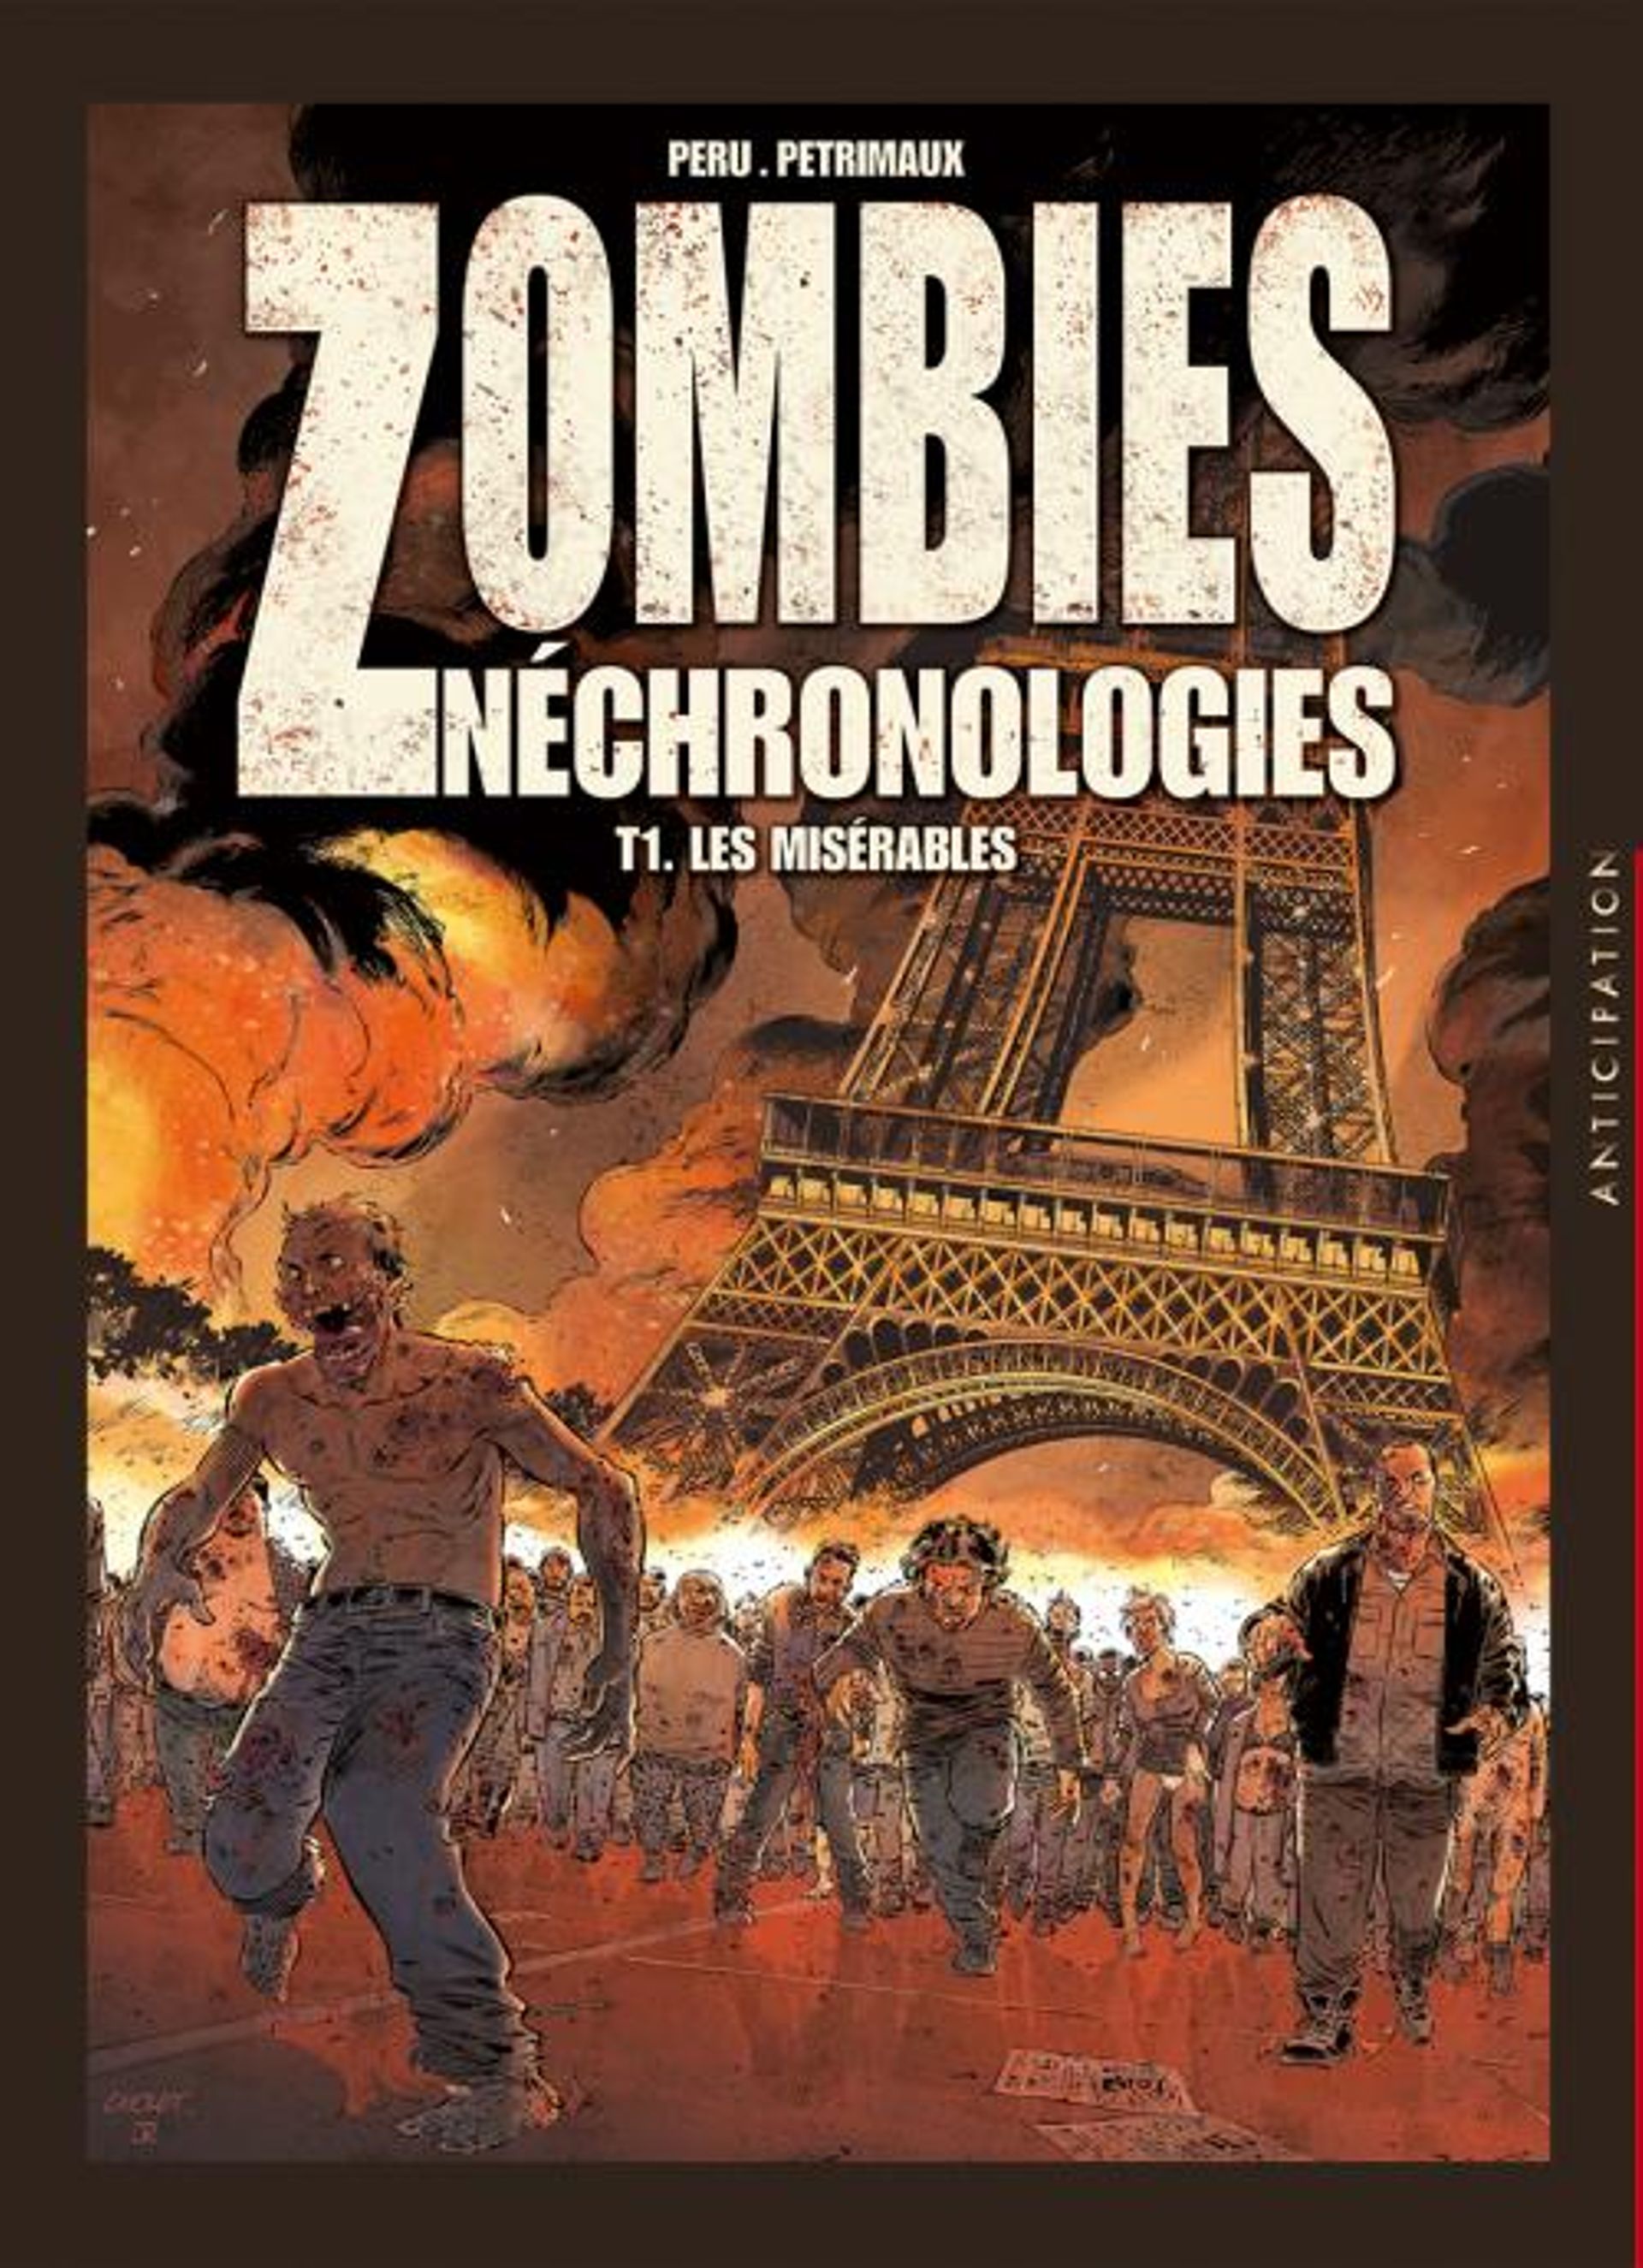 "Zombies Néchrologies, T1 Les misérables", de Peru et Petrimaux – Ed  Soleil